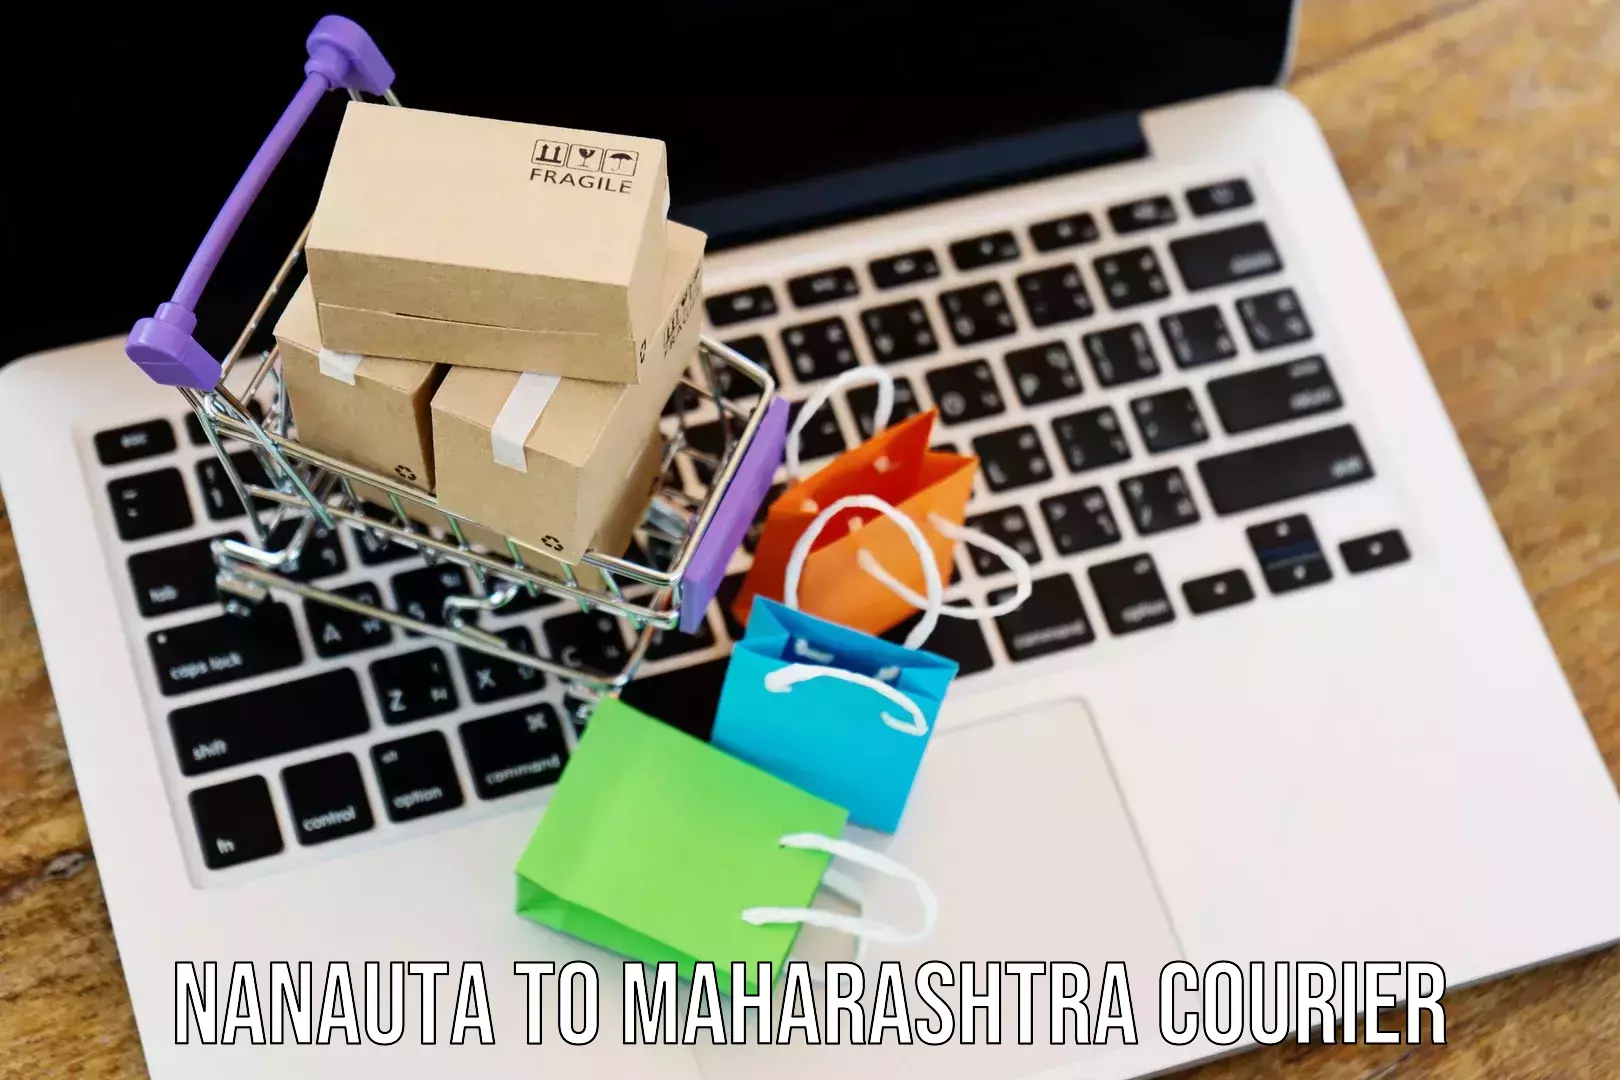 International parcel service Nanauta to Maharashtra